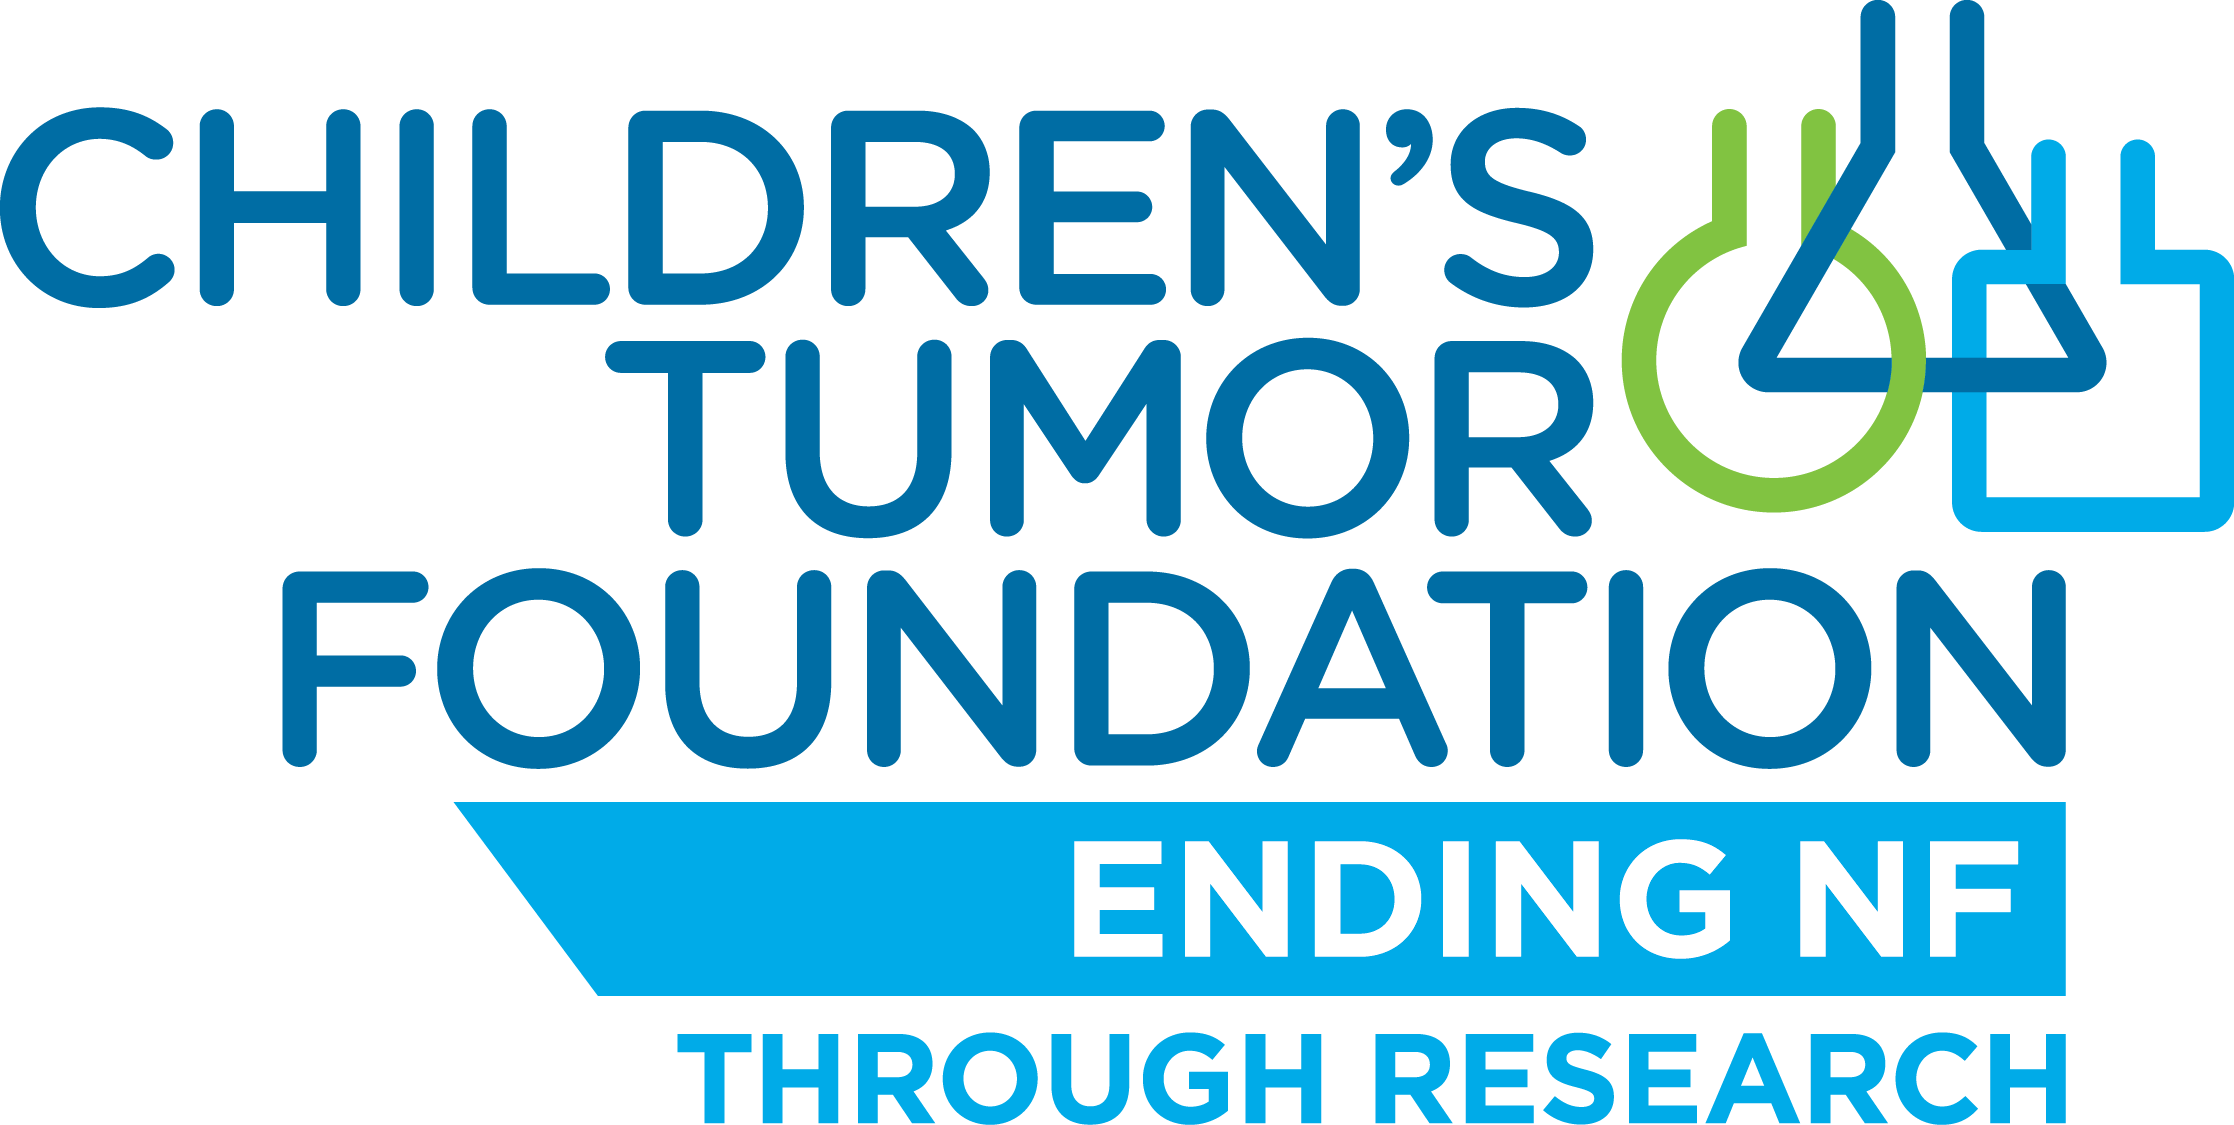 Children's Tumor Foundation logo